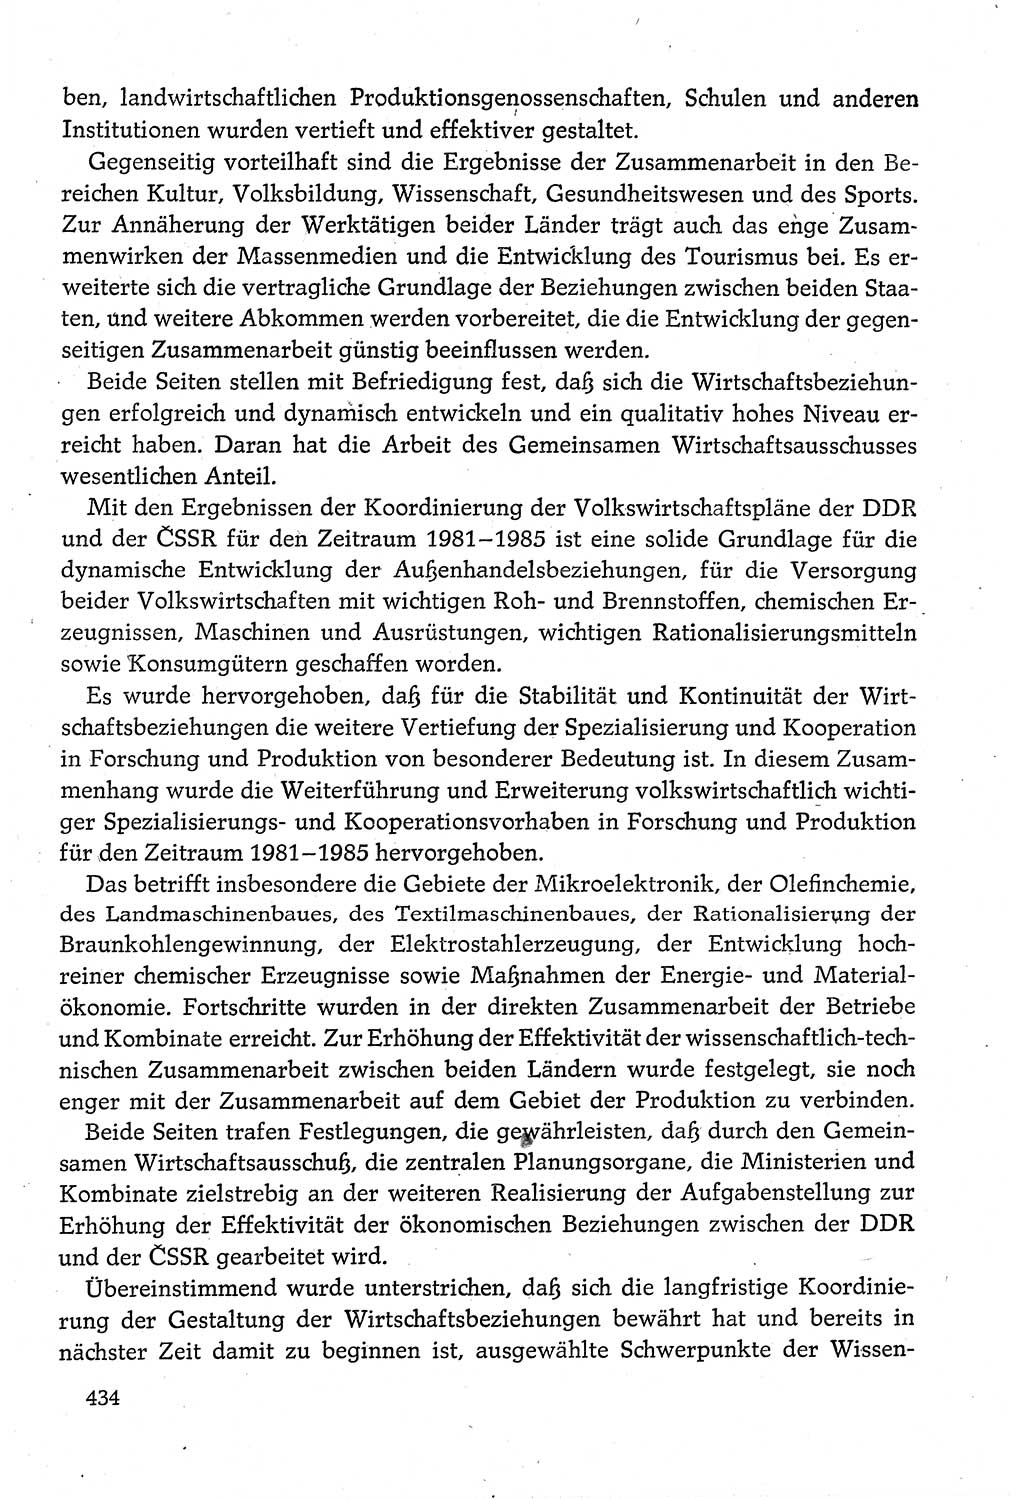 Dokumente der Sozialistischen Einheitspartei Deutschlands (SED) [Deutsche Demokratische Republik (DDR)] 1980-1981, Seite 434 (Dok. SED DDR 1980-1981, S. 434)